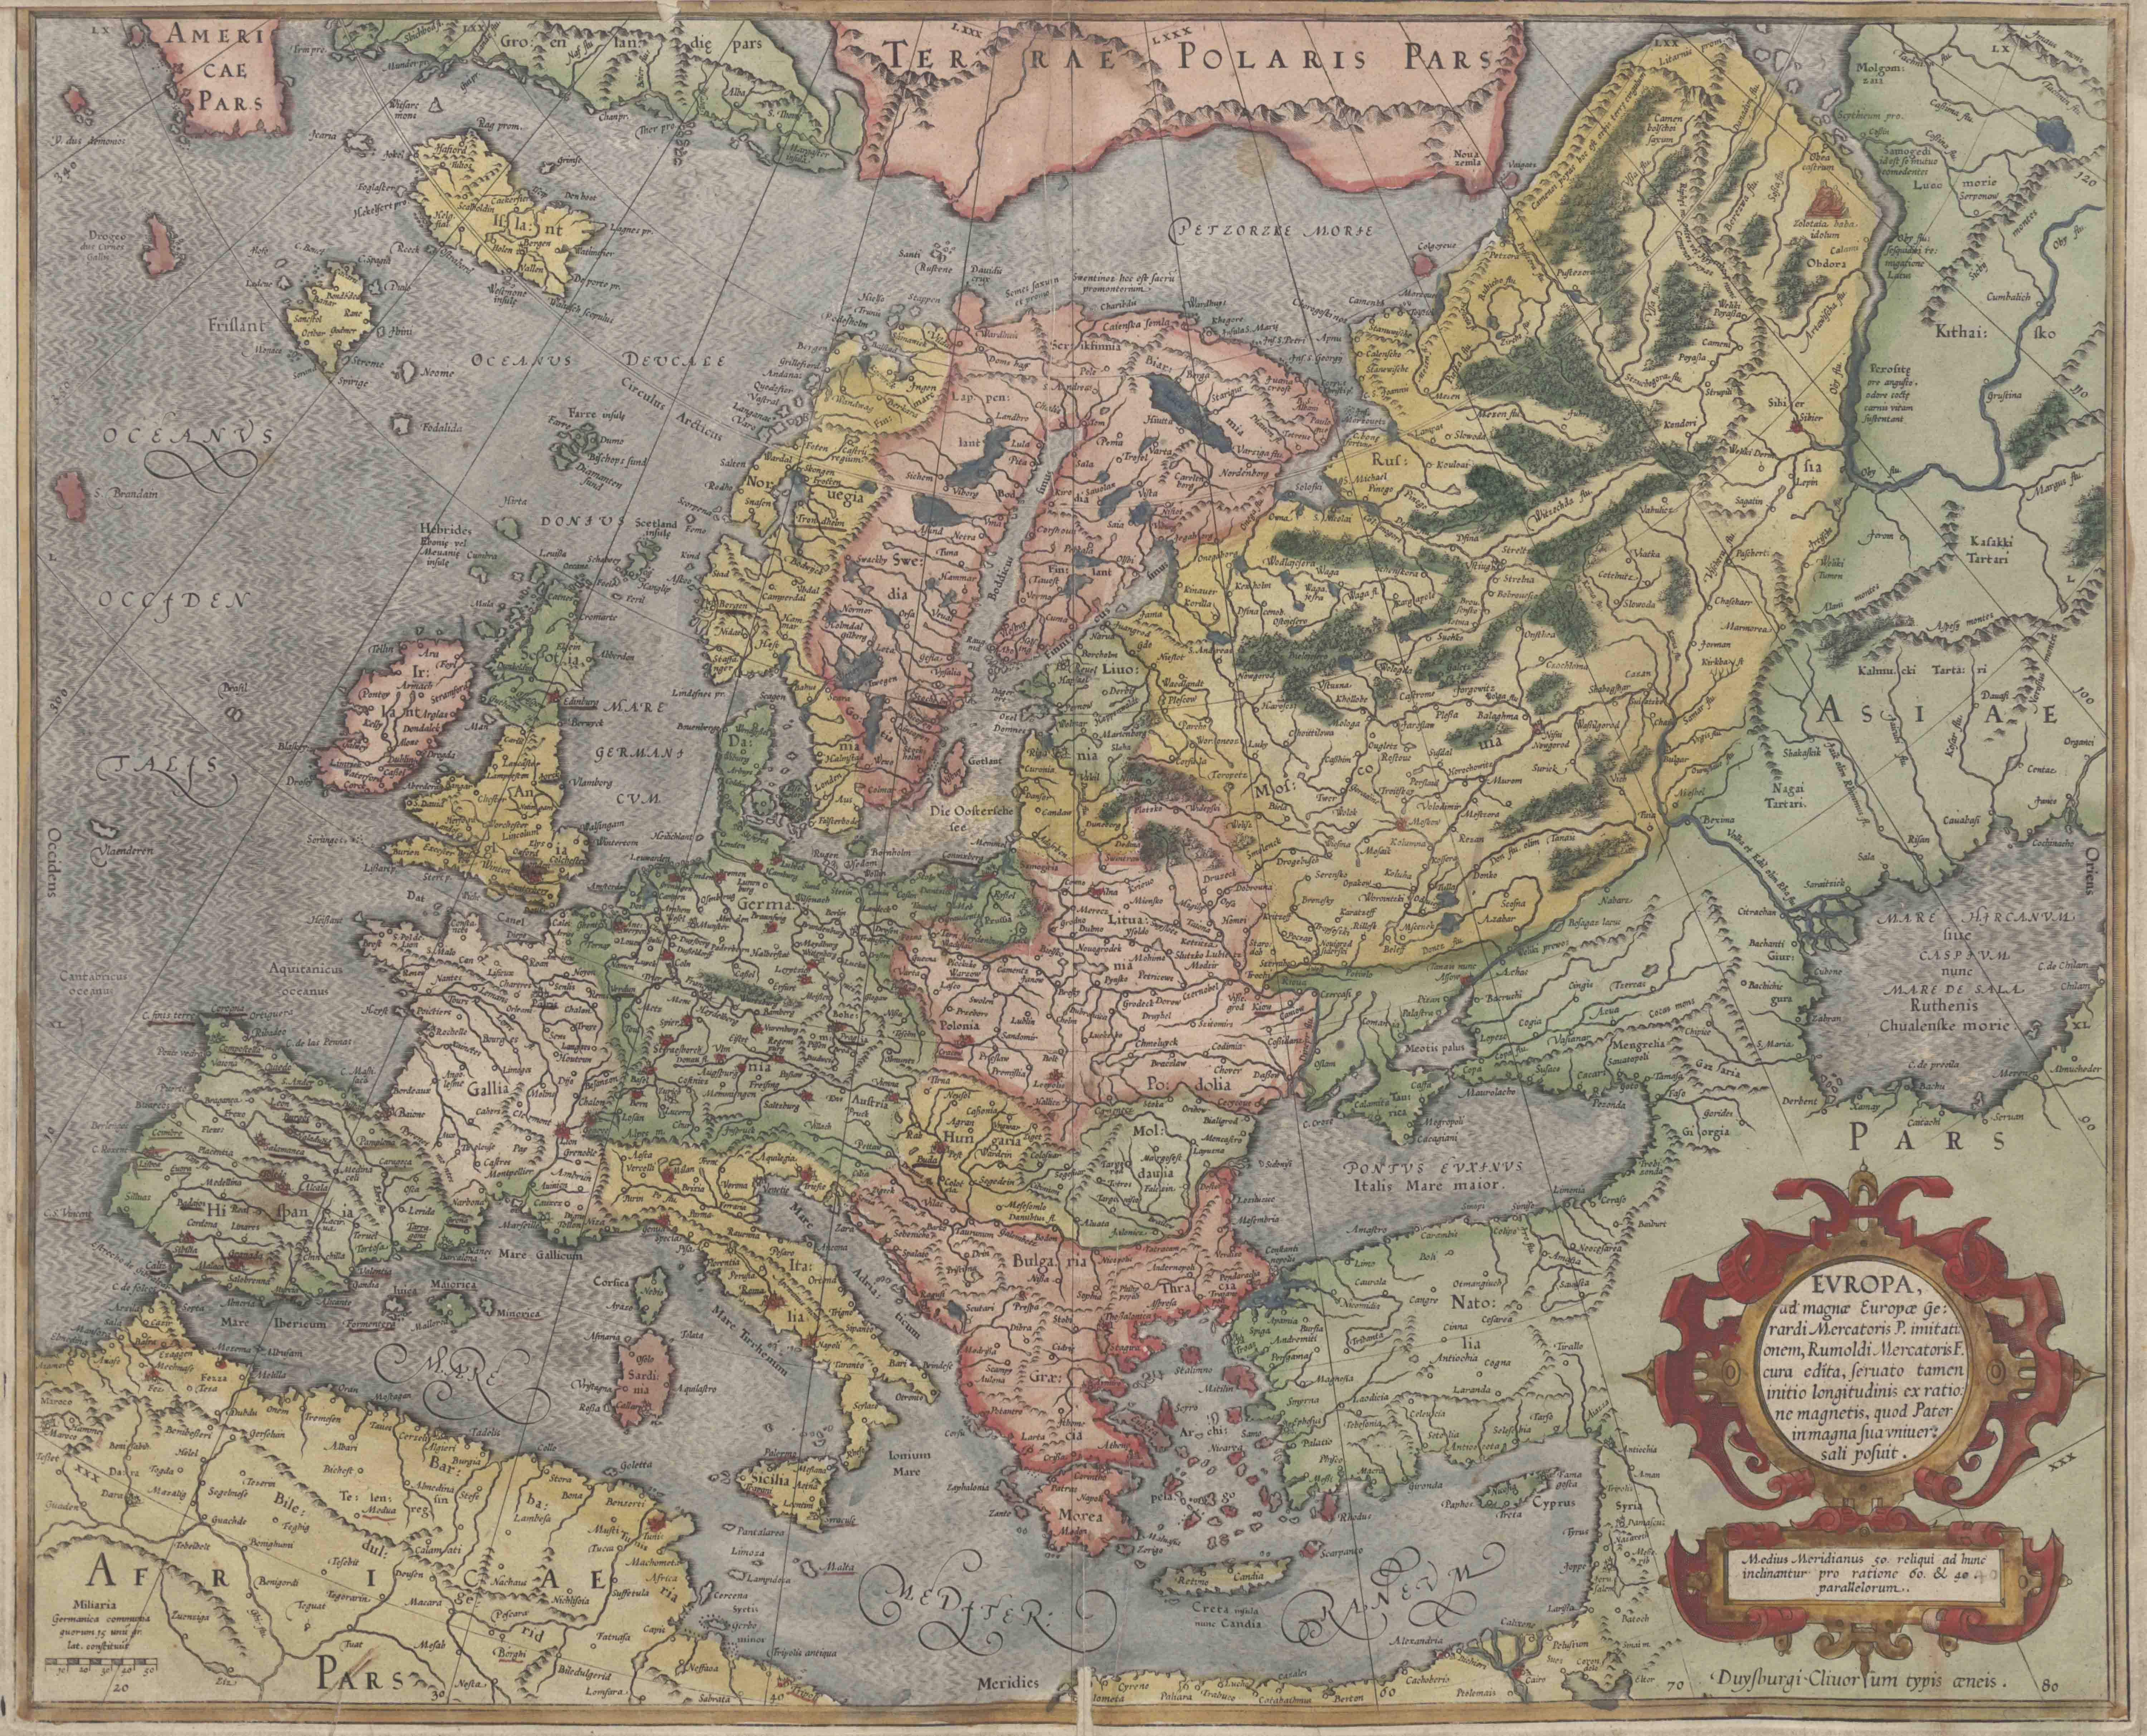 Mapa de Europa realizado por Mercator en 1589